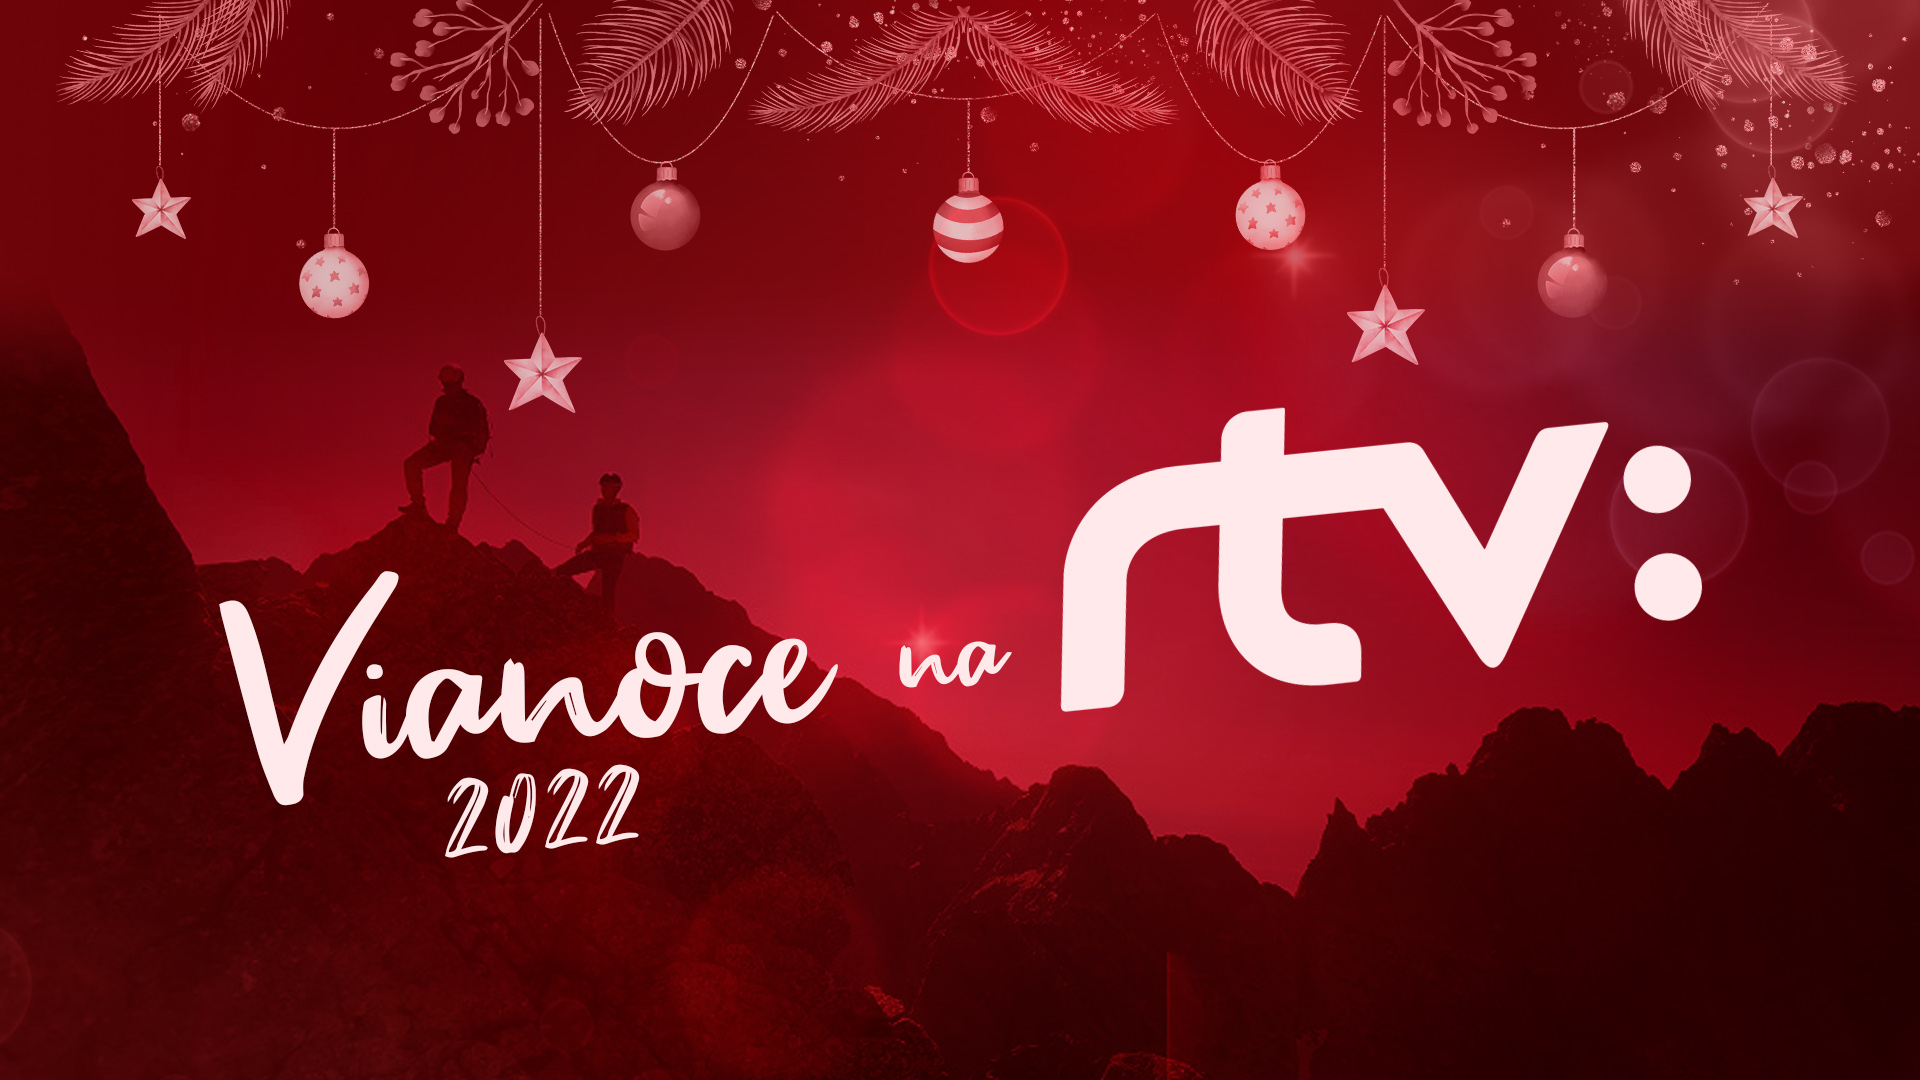 vianoce-rtvs-2022